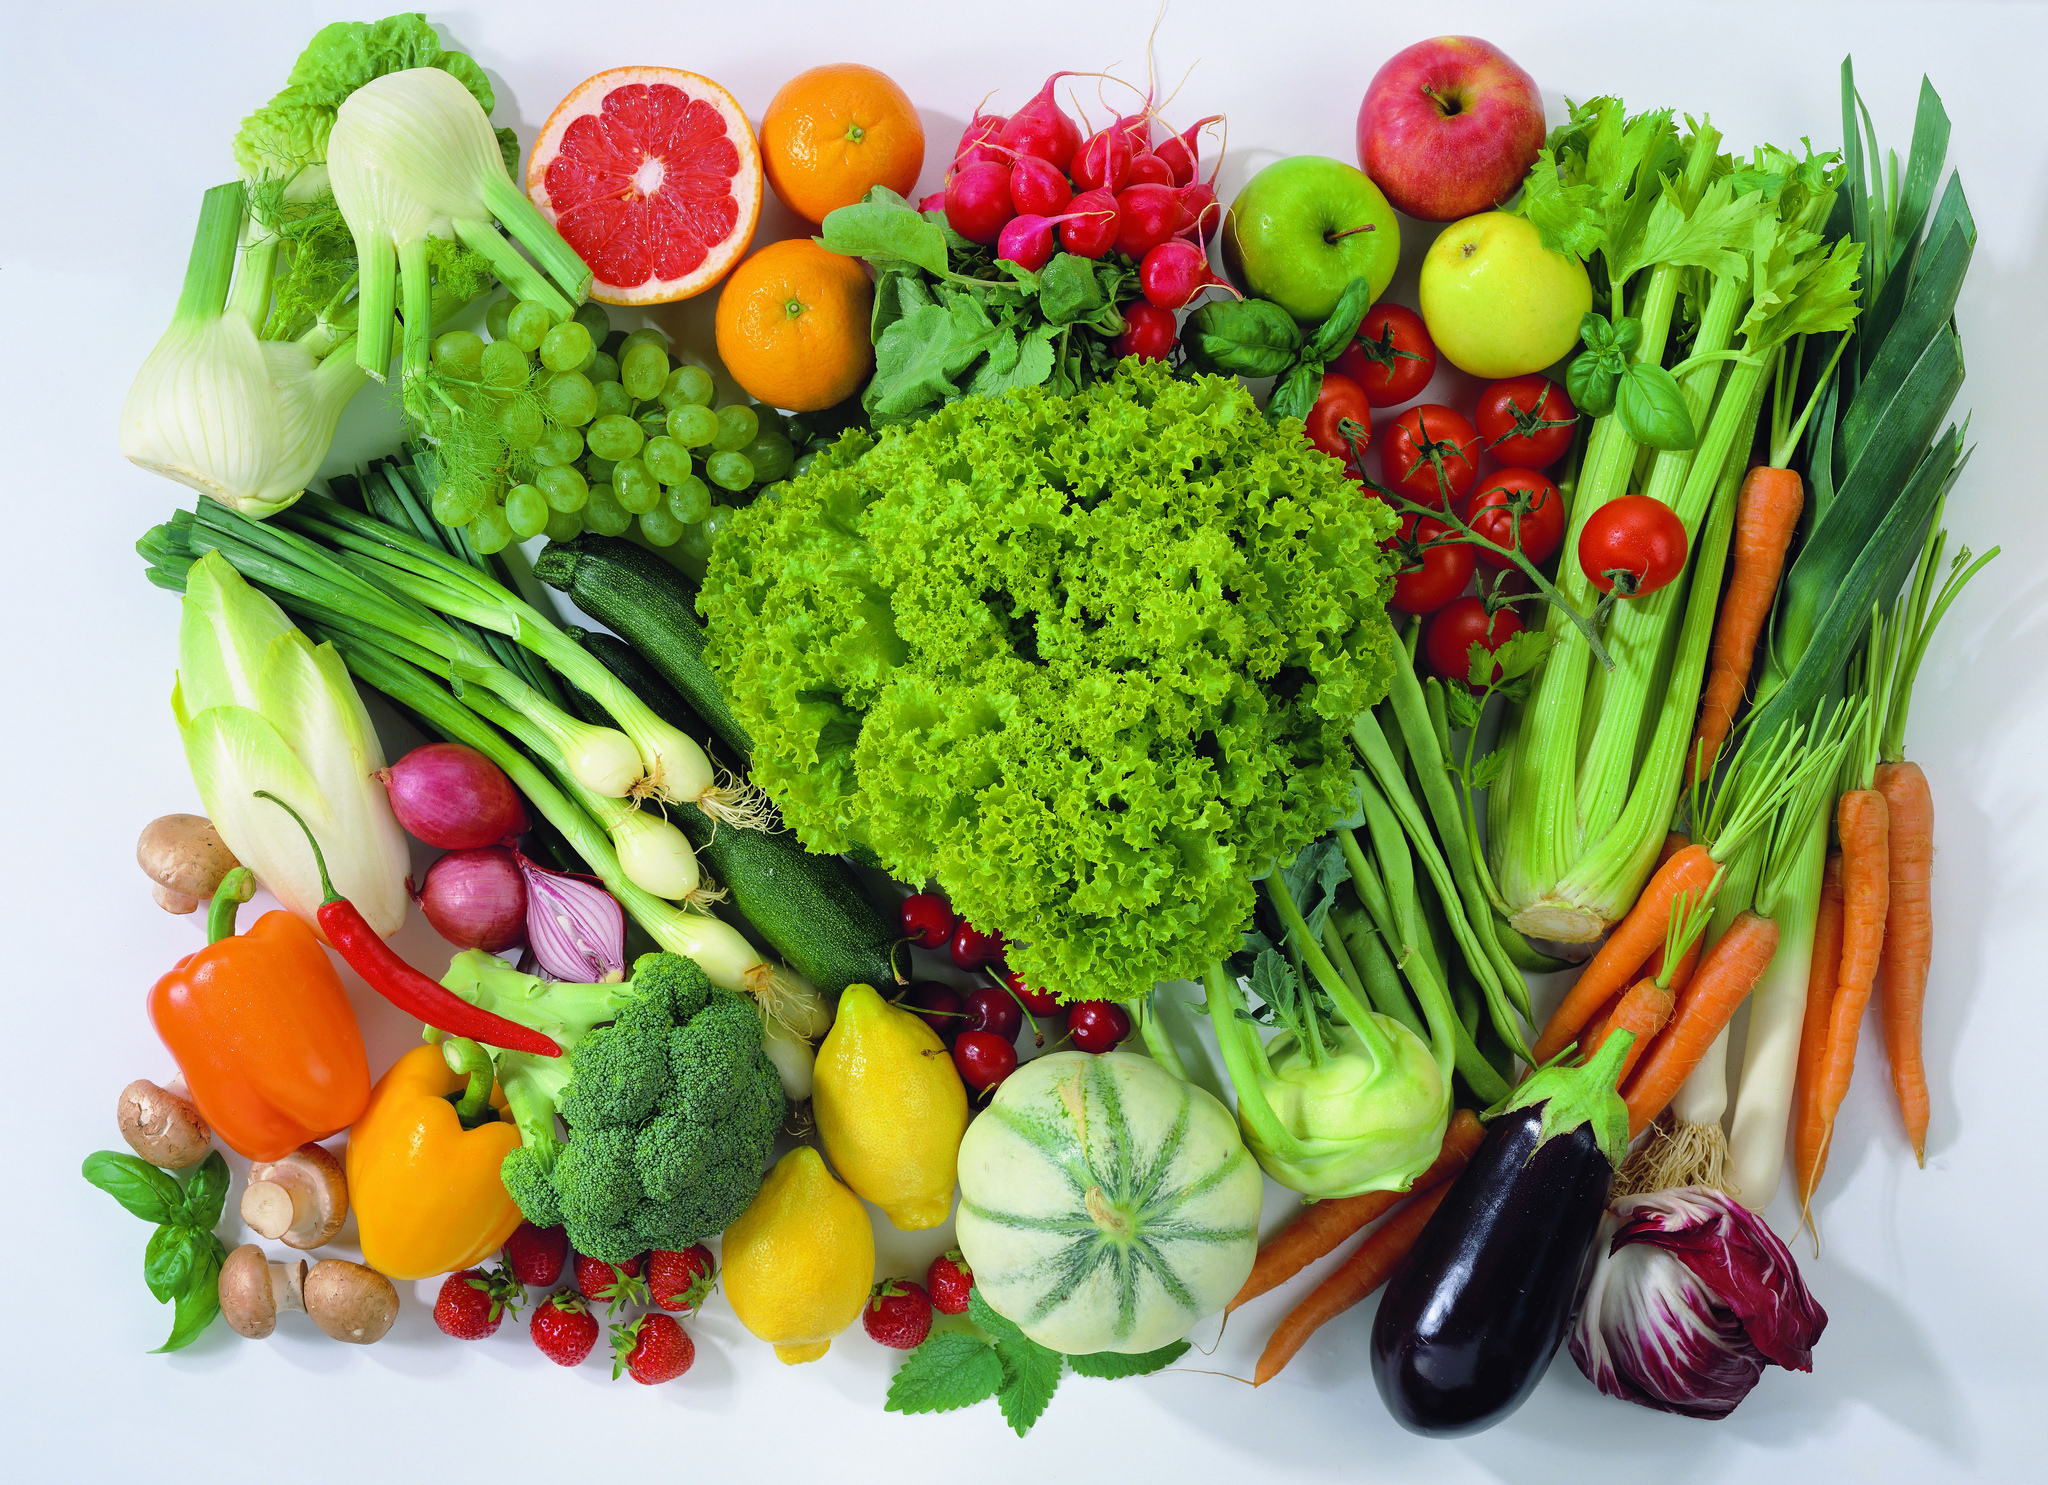 Vários legumes e verdruas sobre uma mesa vistos de cima.